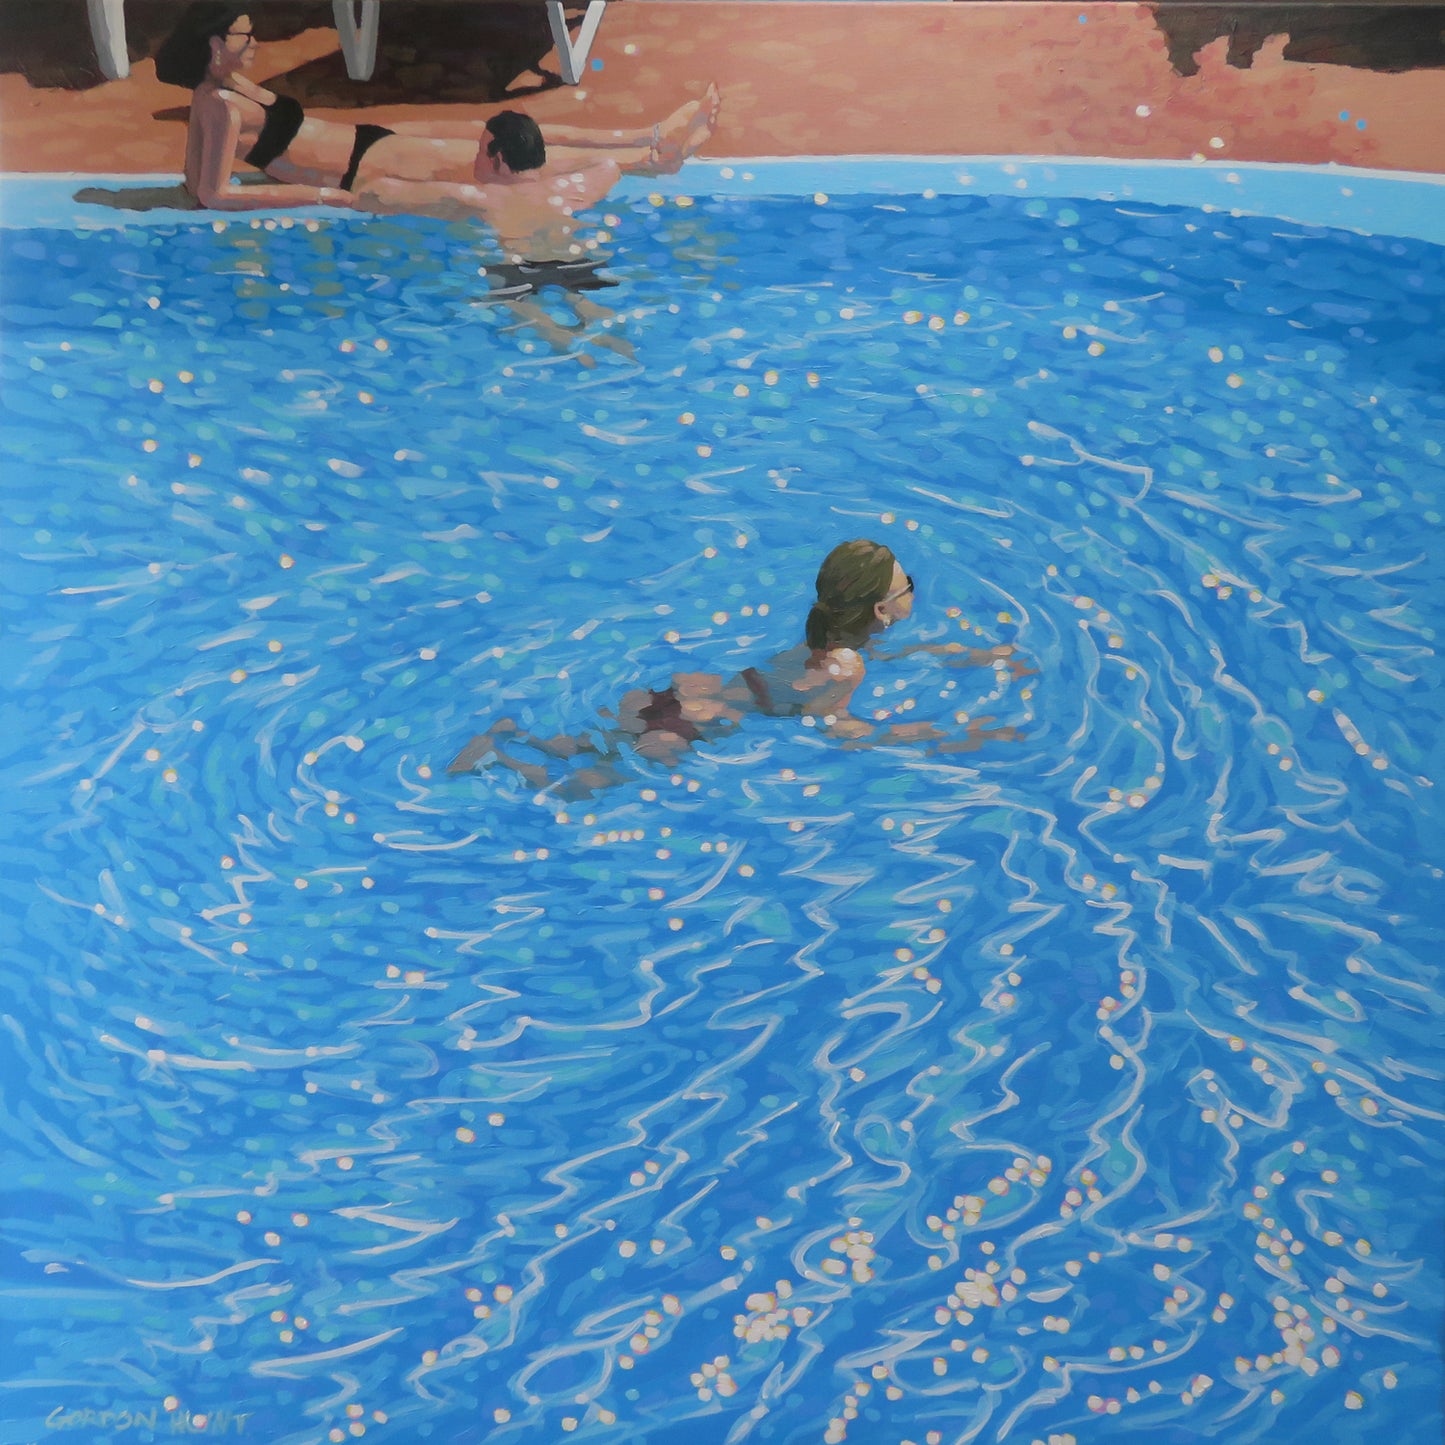 SA003. Pool life-study I - Original painting